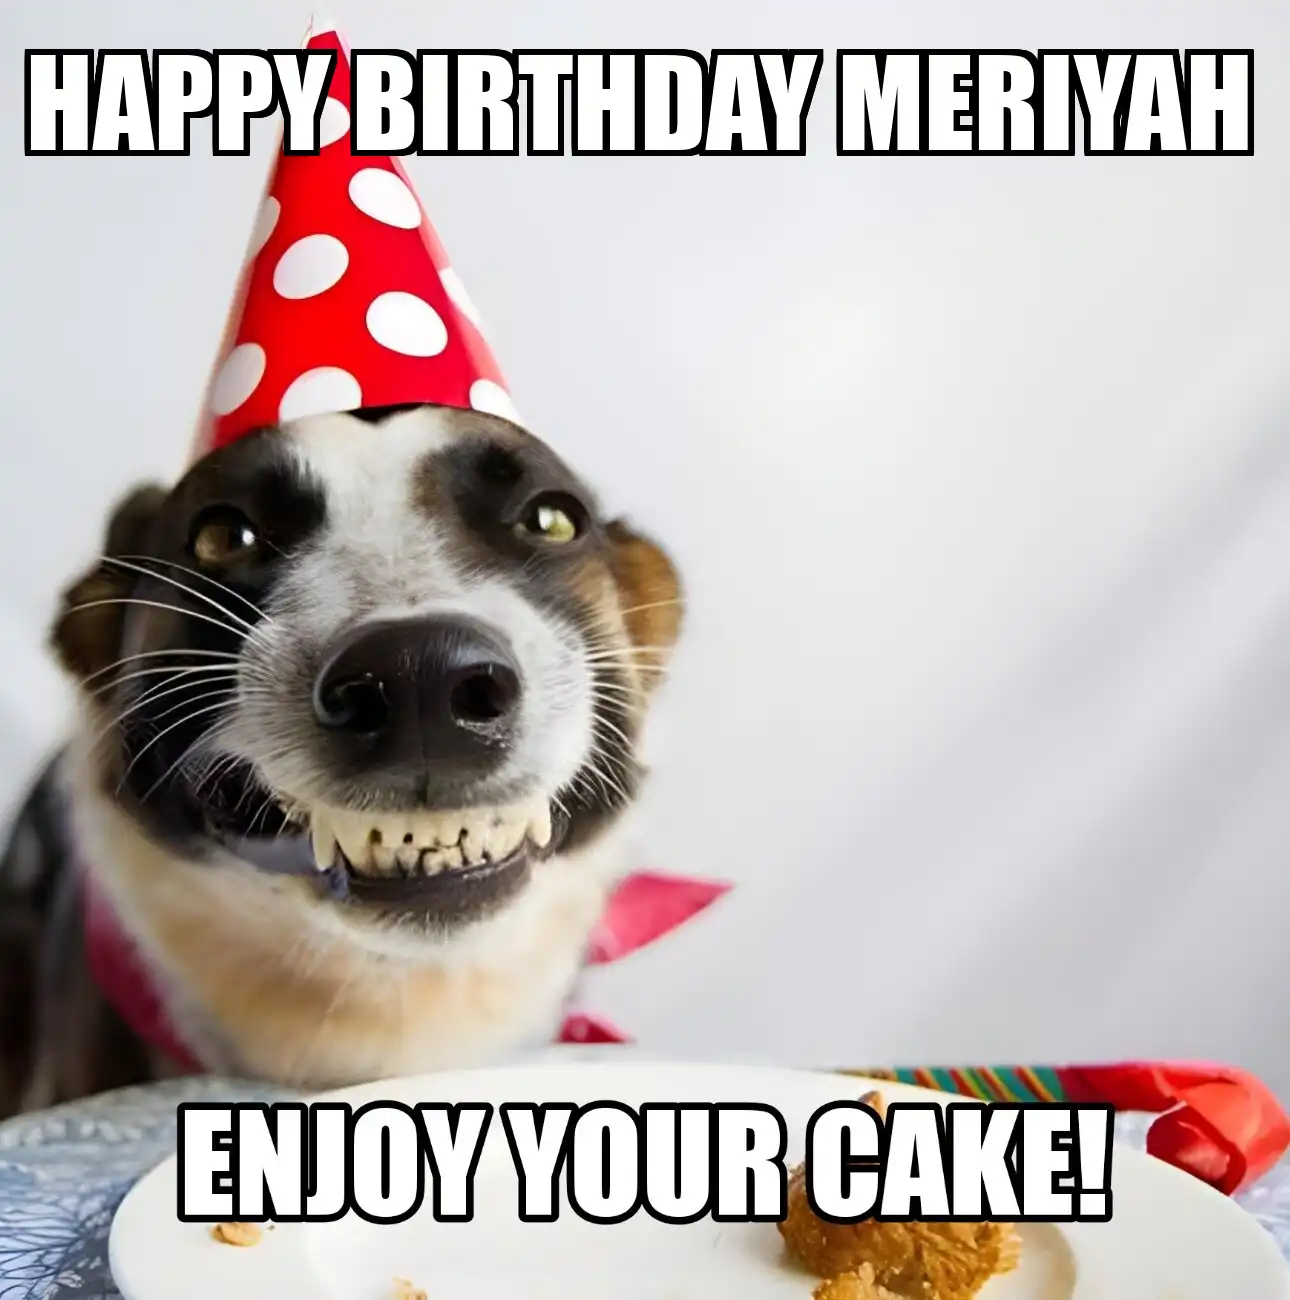 Happy Birthday Meriyah Enjoy Your Cake Dog Meme